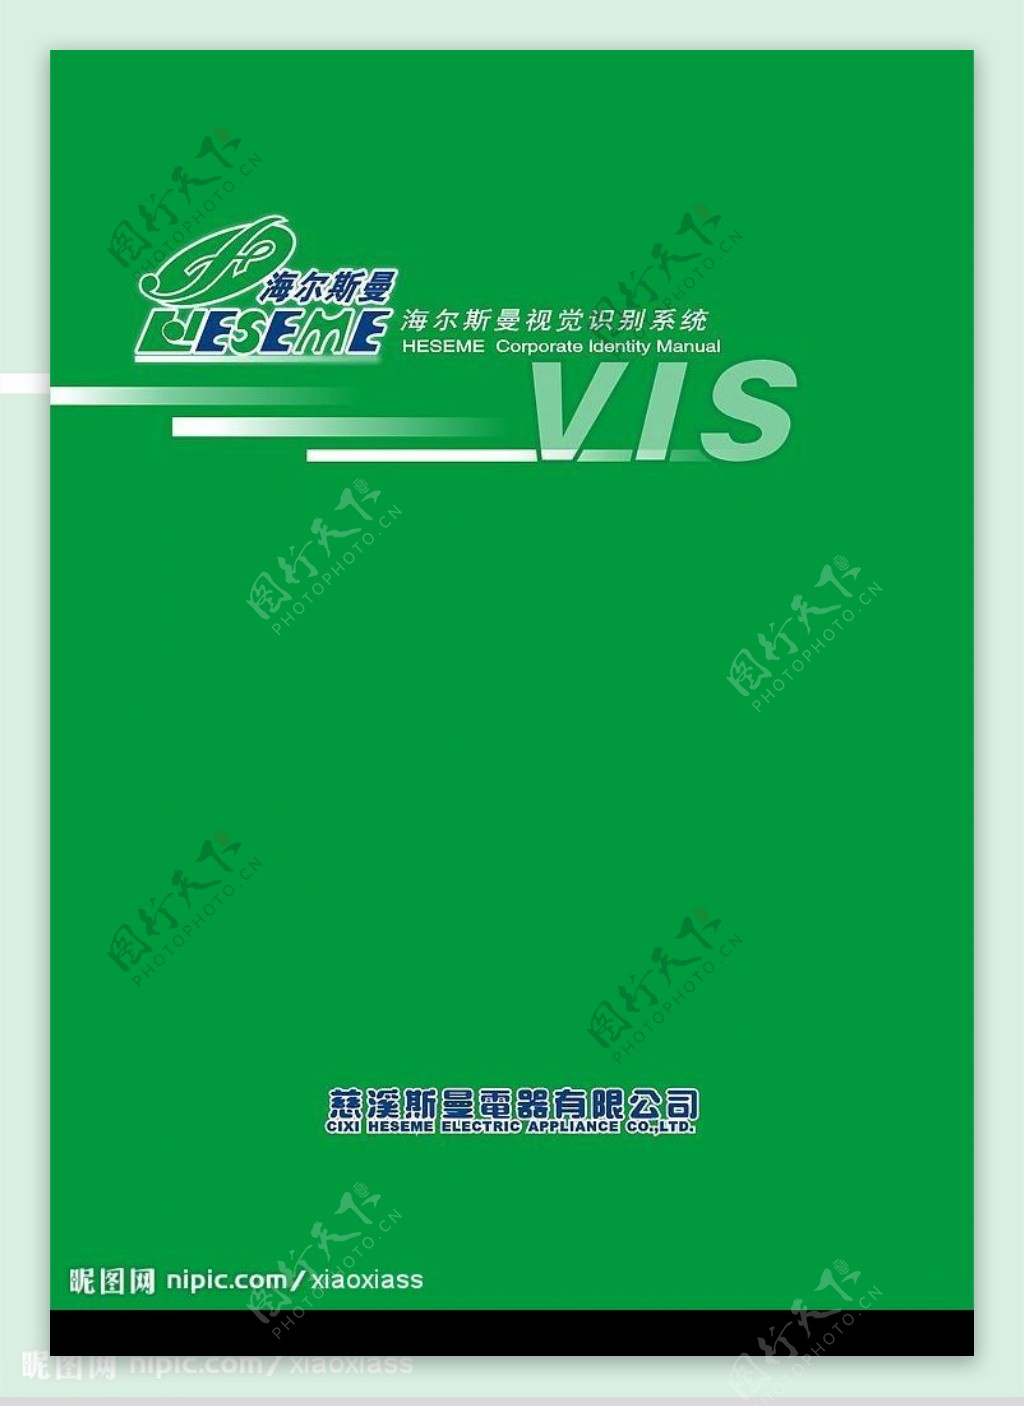 企业VIS系统一整套67页图片